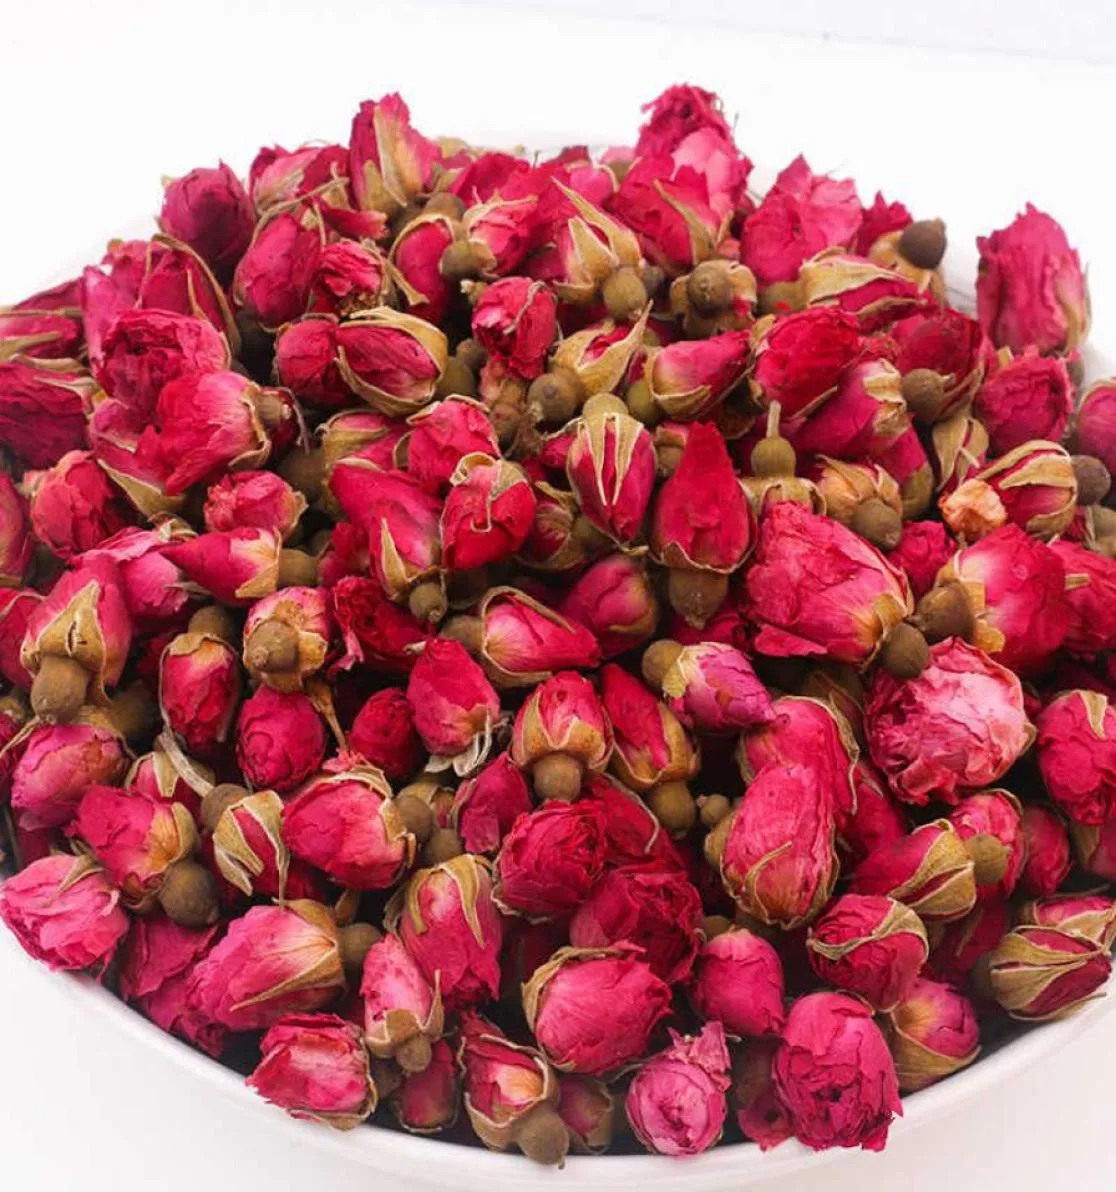 500 g pachnący naturalne wysuszone czerwonoczernie pąki róży Organiczne suszone kwiaty pąki kobiety prezent dekoracja ślubna Q08269308254